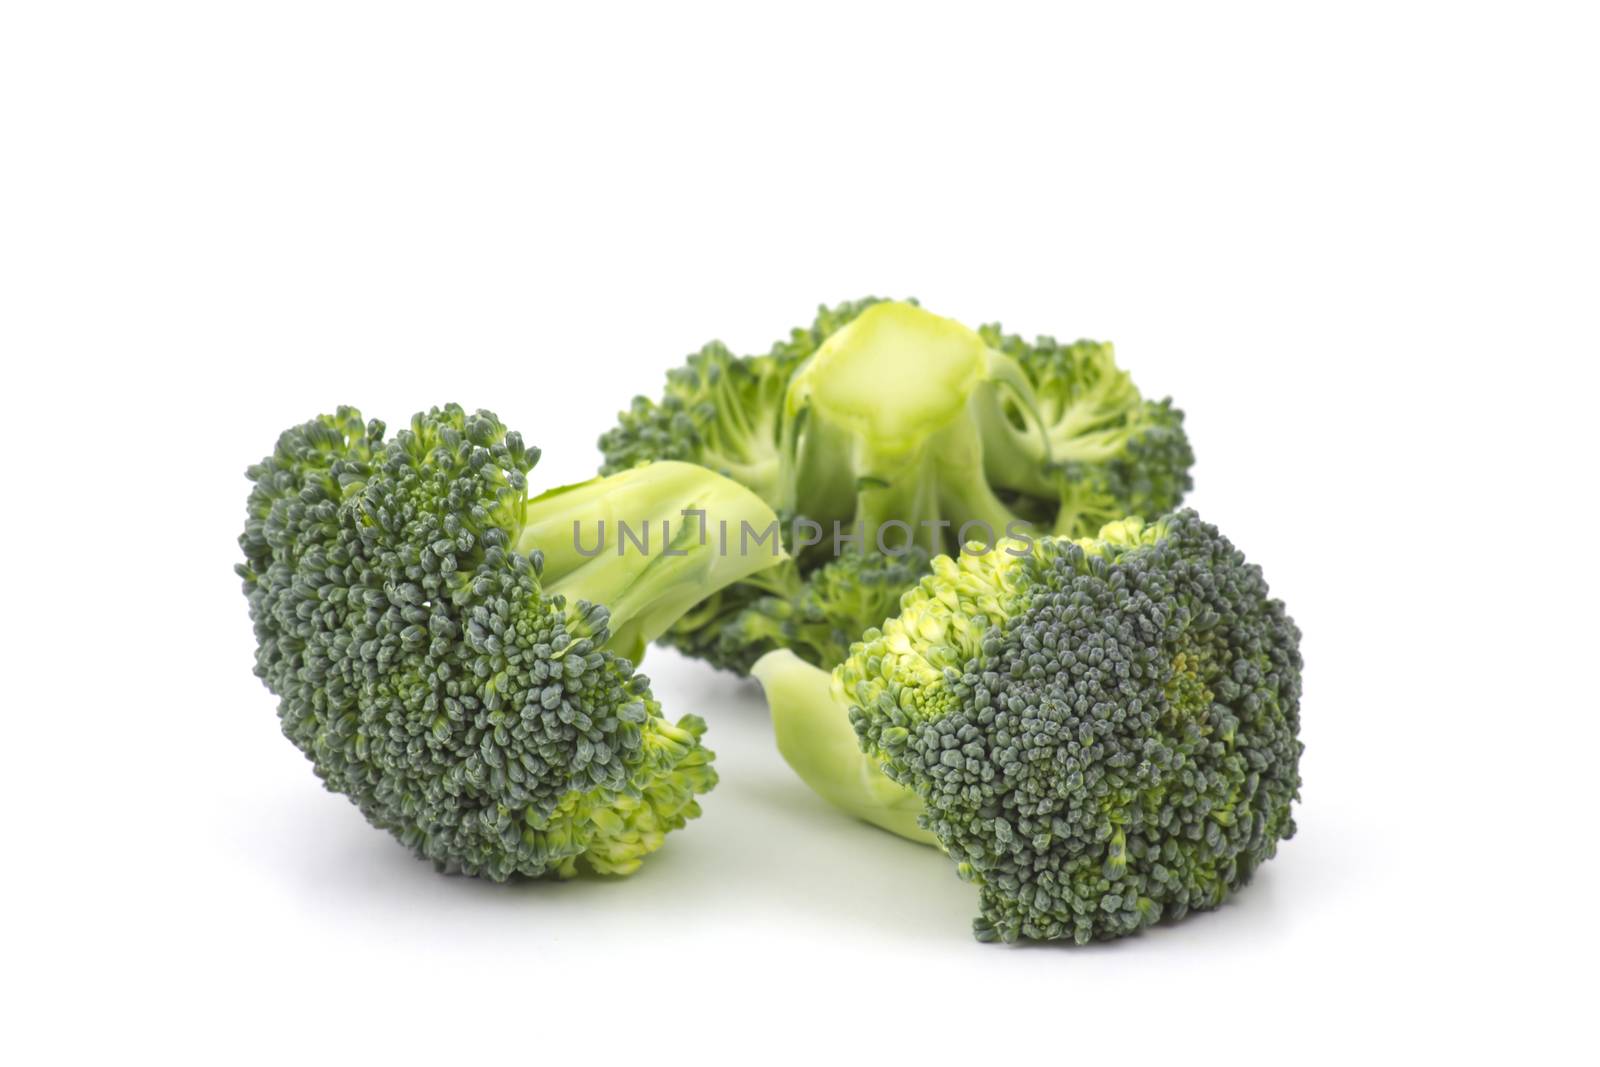 Raw broccoli on white background by miradrozdowski